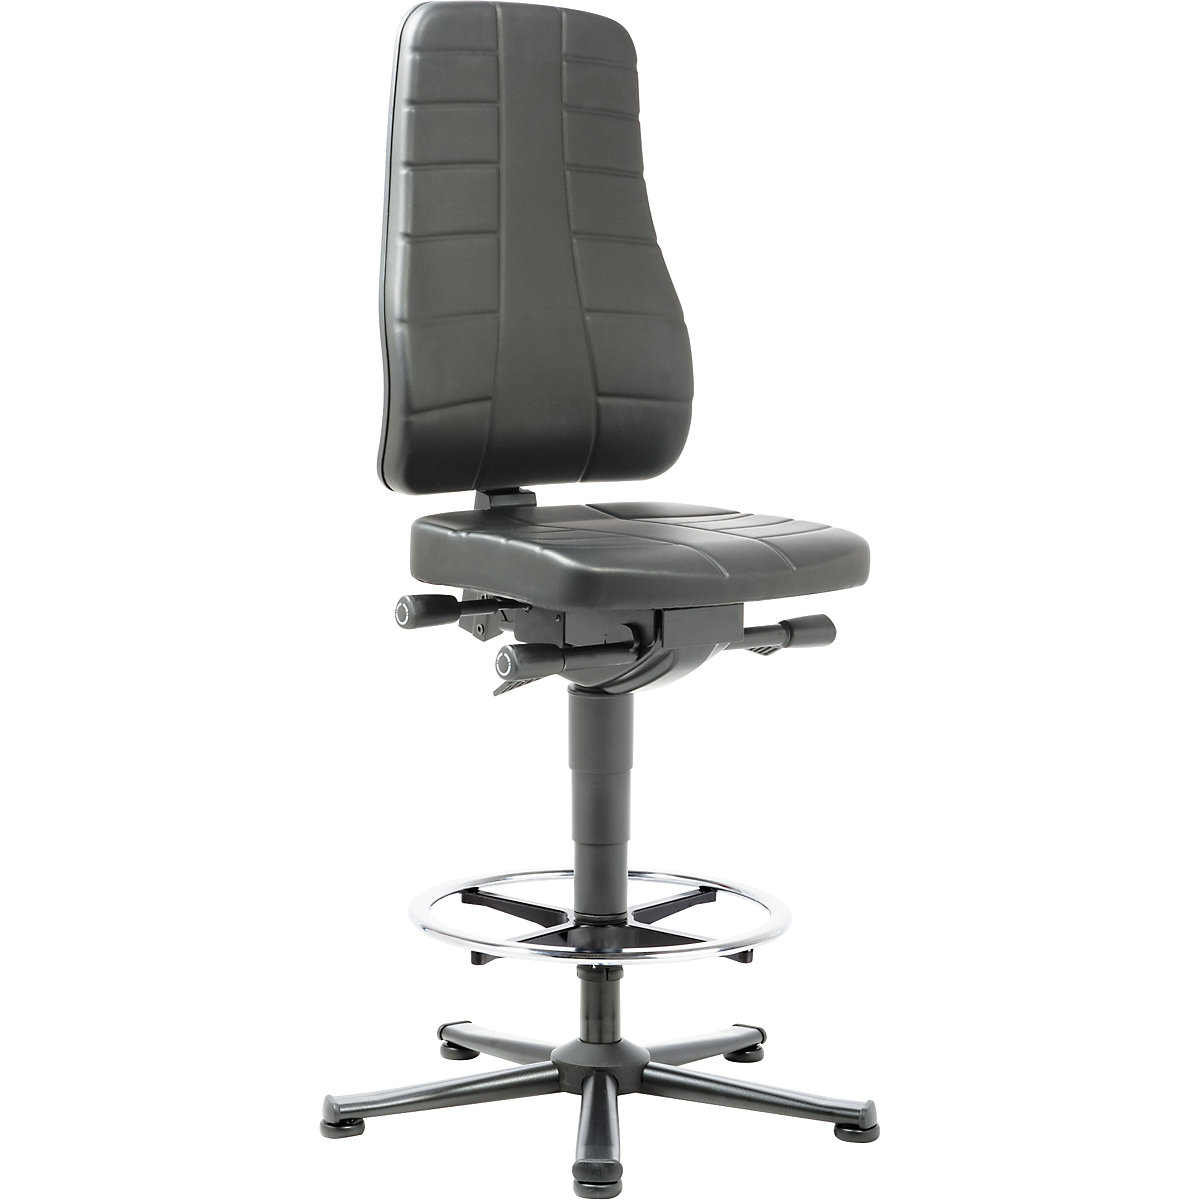 Pracovní otočná židle All-in-One – bimos, s podlahovými patkami a nožním kruhem, koženka, černá-6